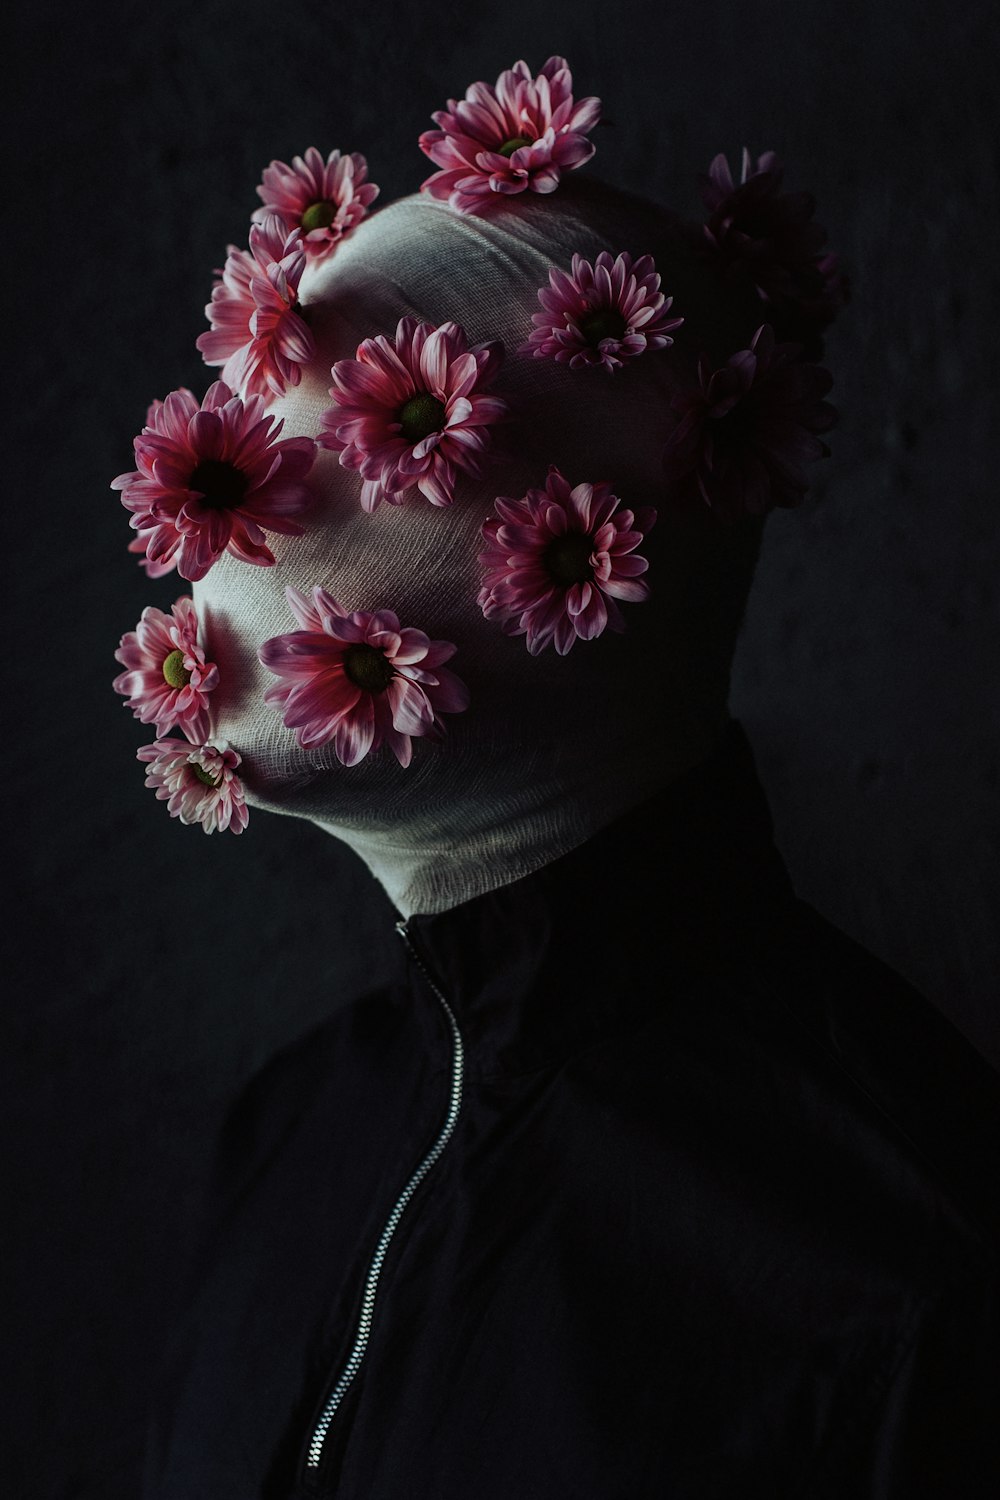 Una persona con flores en la cabeza en la oscuridad